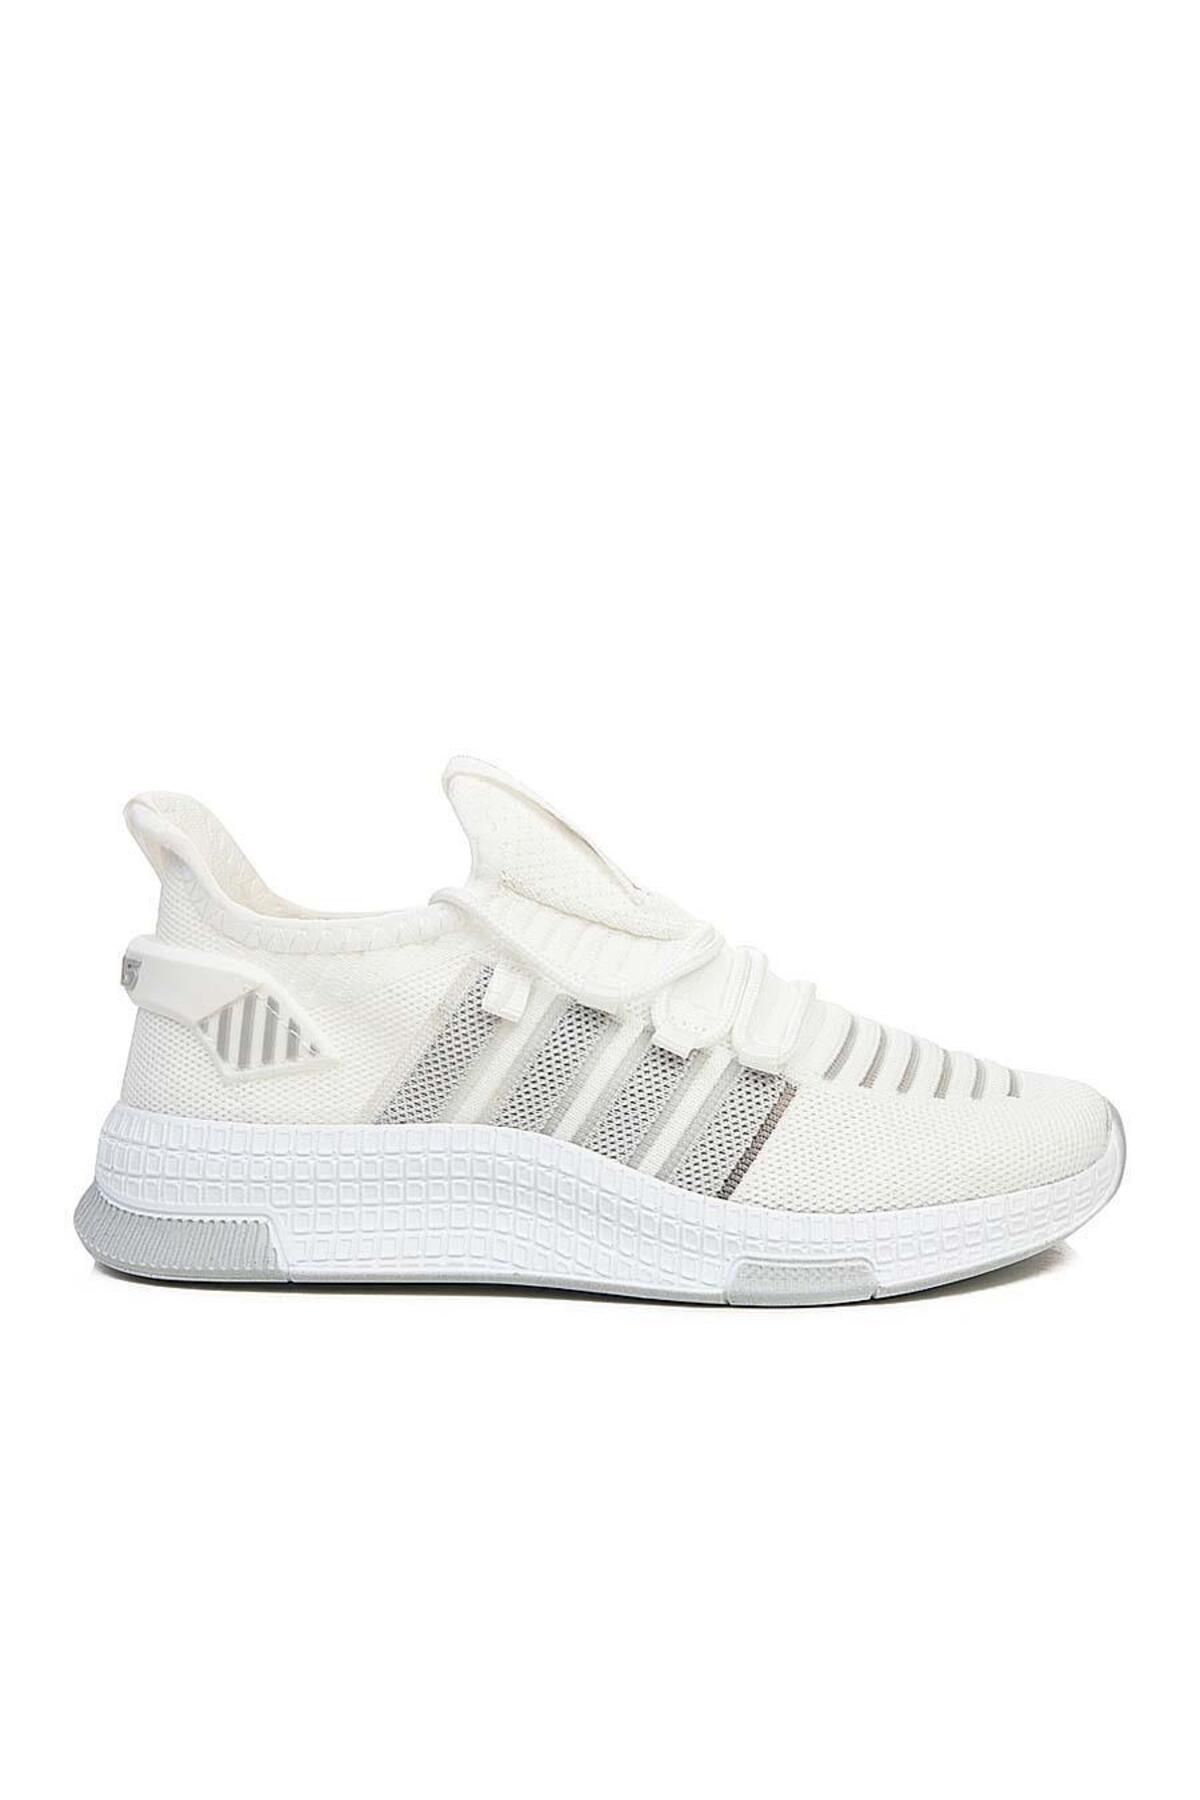 MELAMS Beyaz Renk Hafif Rahat Unisex Yürüyüş Ayakkabısı